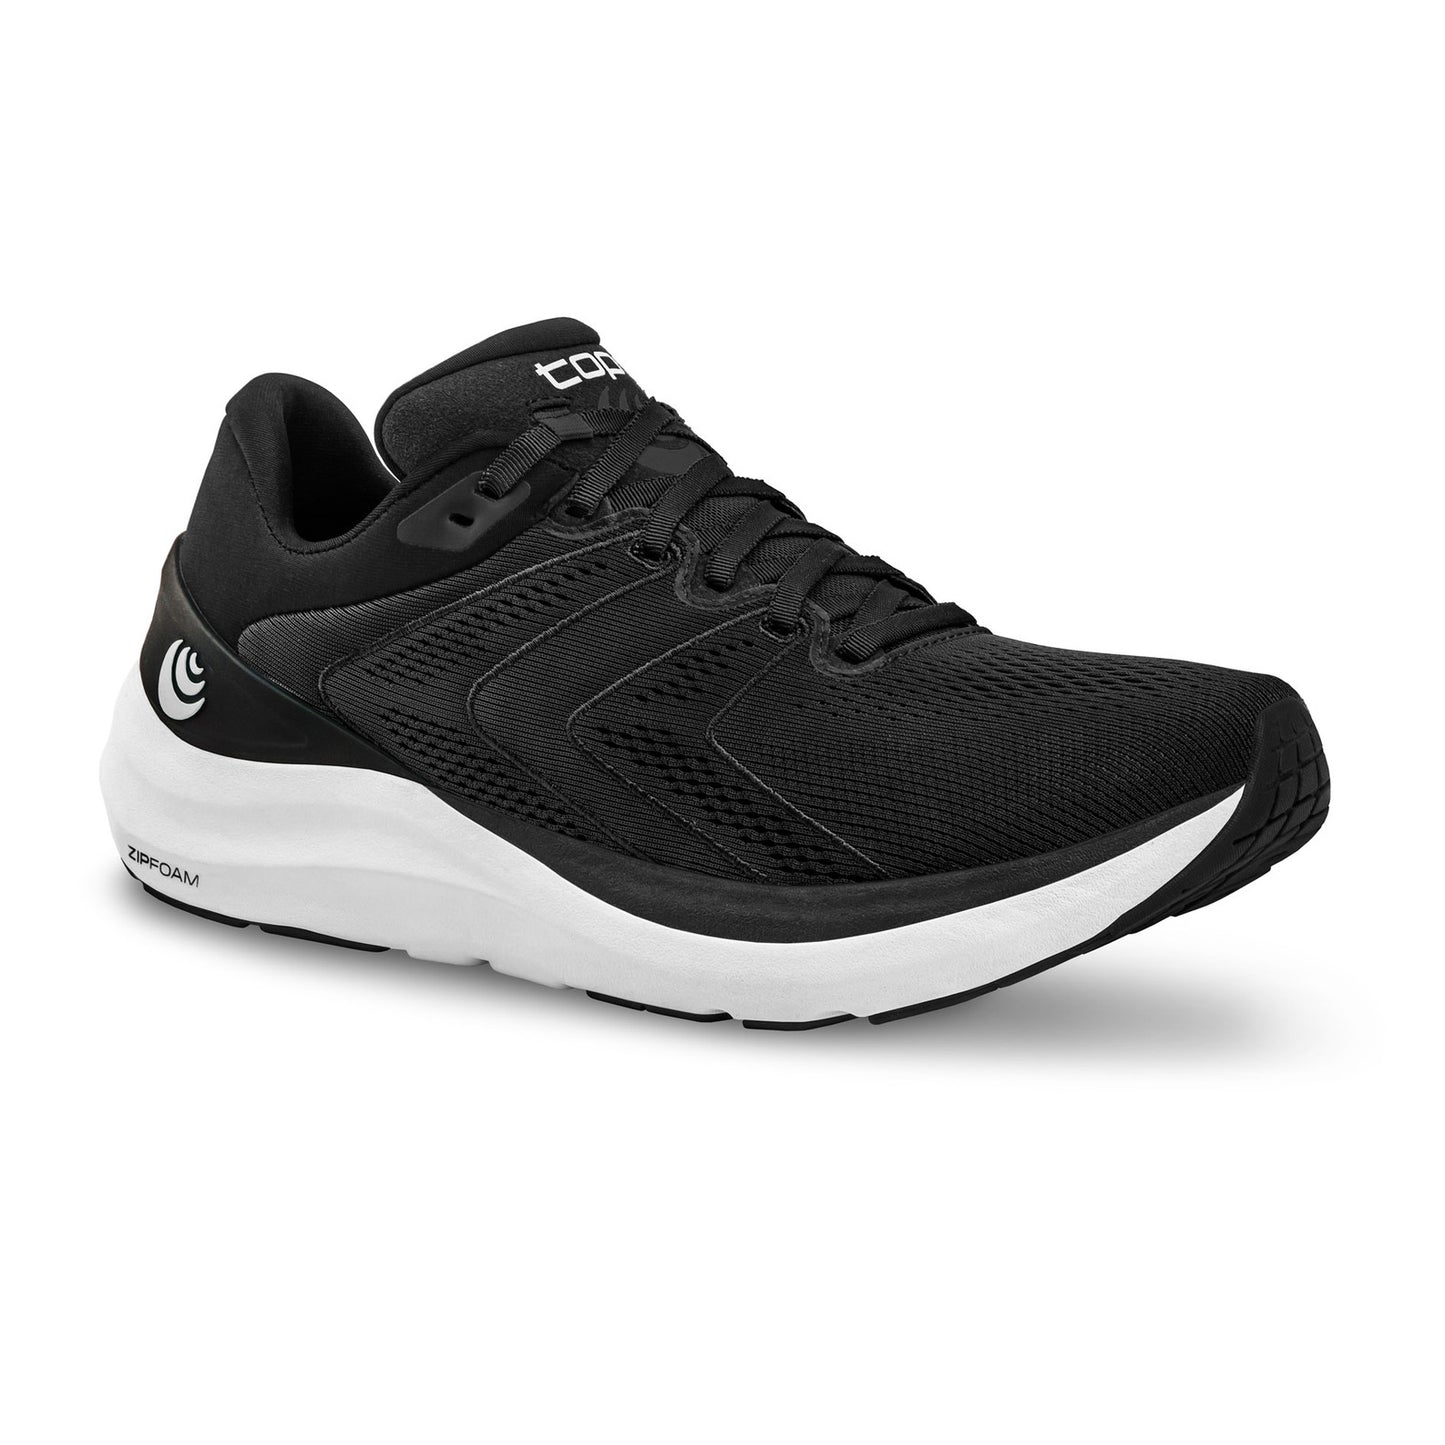 Men's Phantom 2 Running Shoe - Black/White - Regular (D)